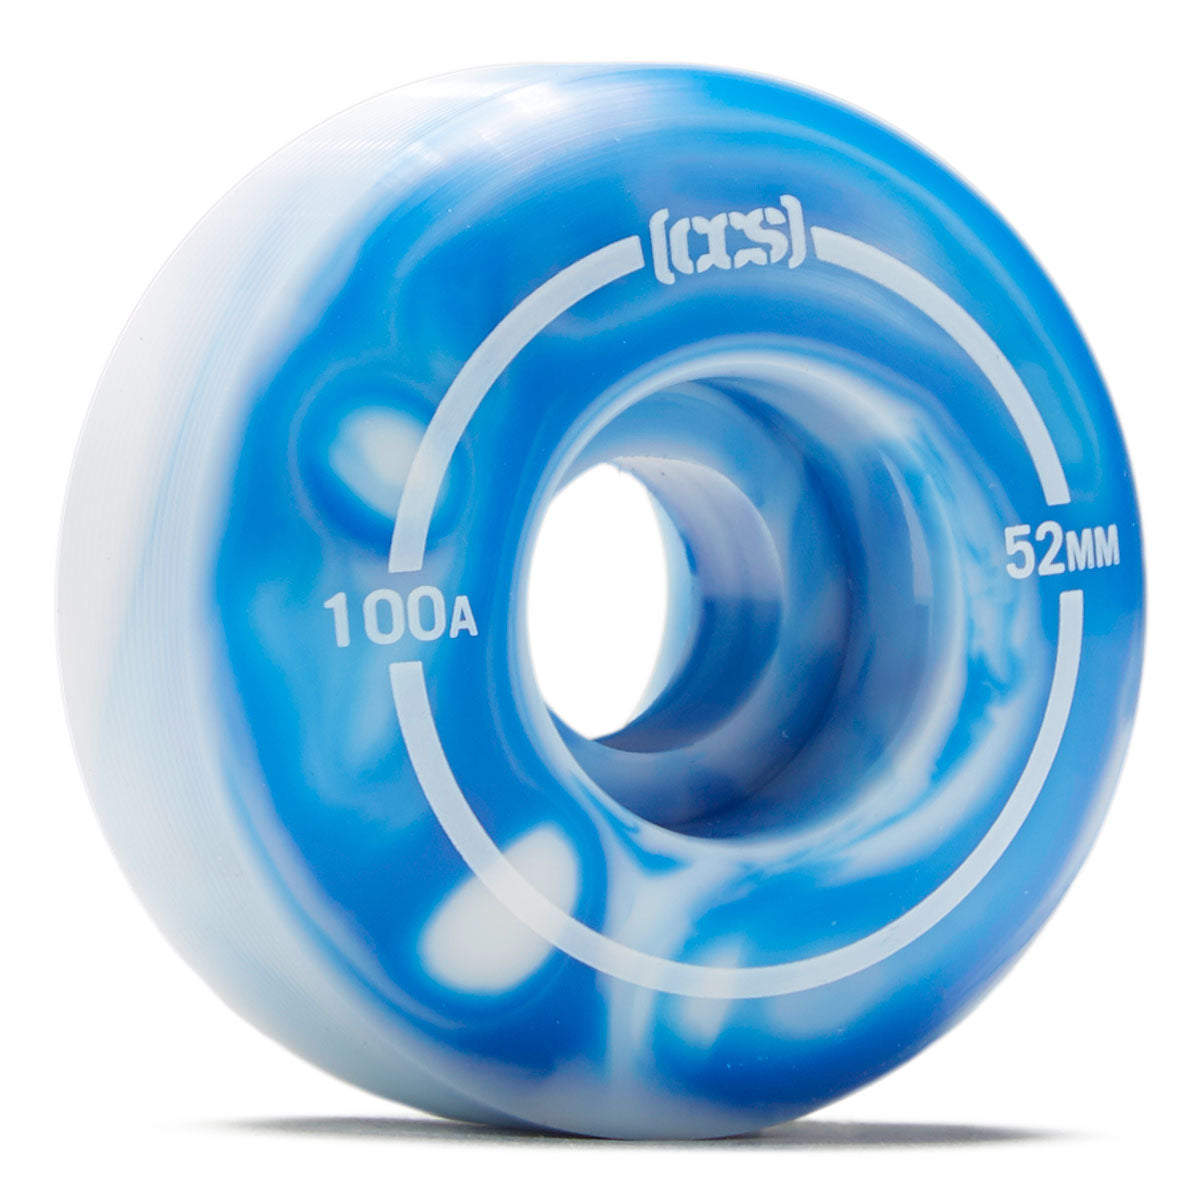 CCS Skateboard Wheels - 52mm Blue Swirl image 1